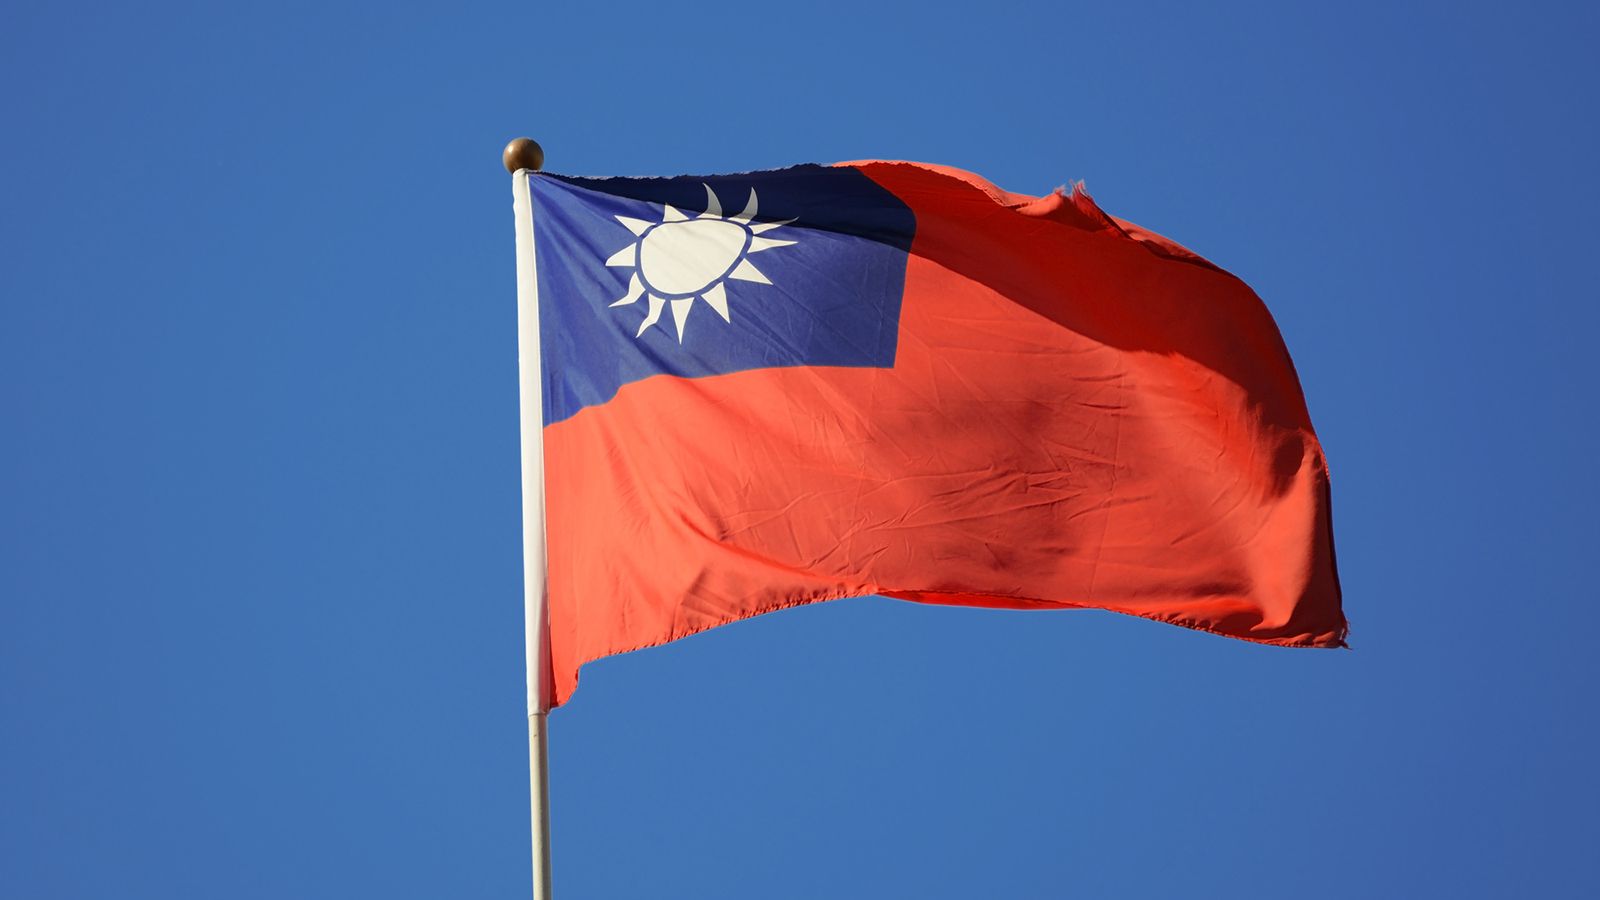 台湾有事は避けられるか｢百害あって一利なし｣ ｢現状維持｣を望む台湾の人々が大多数の現実